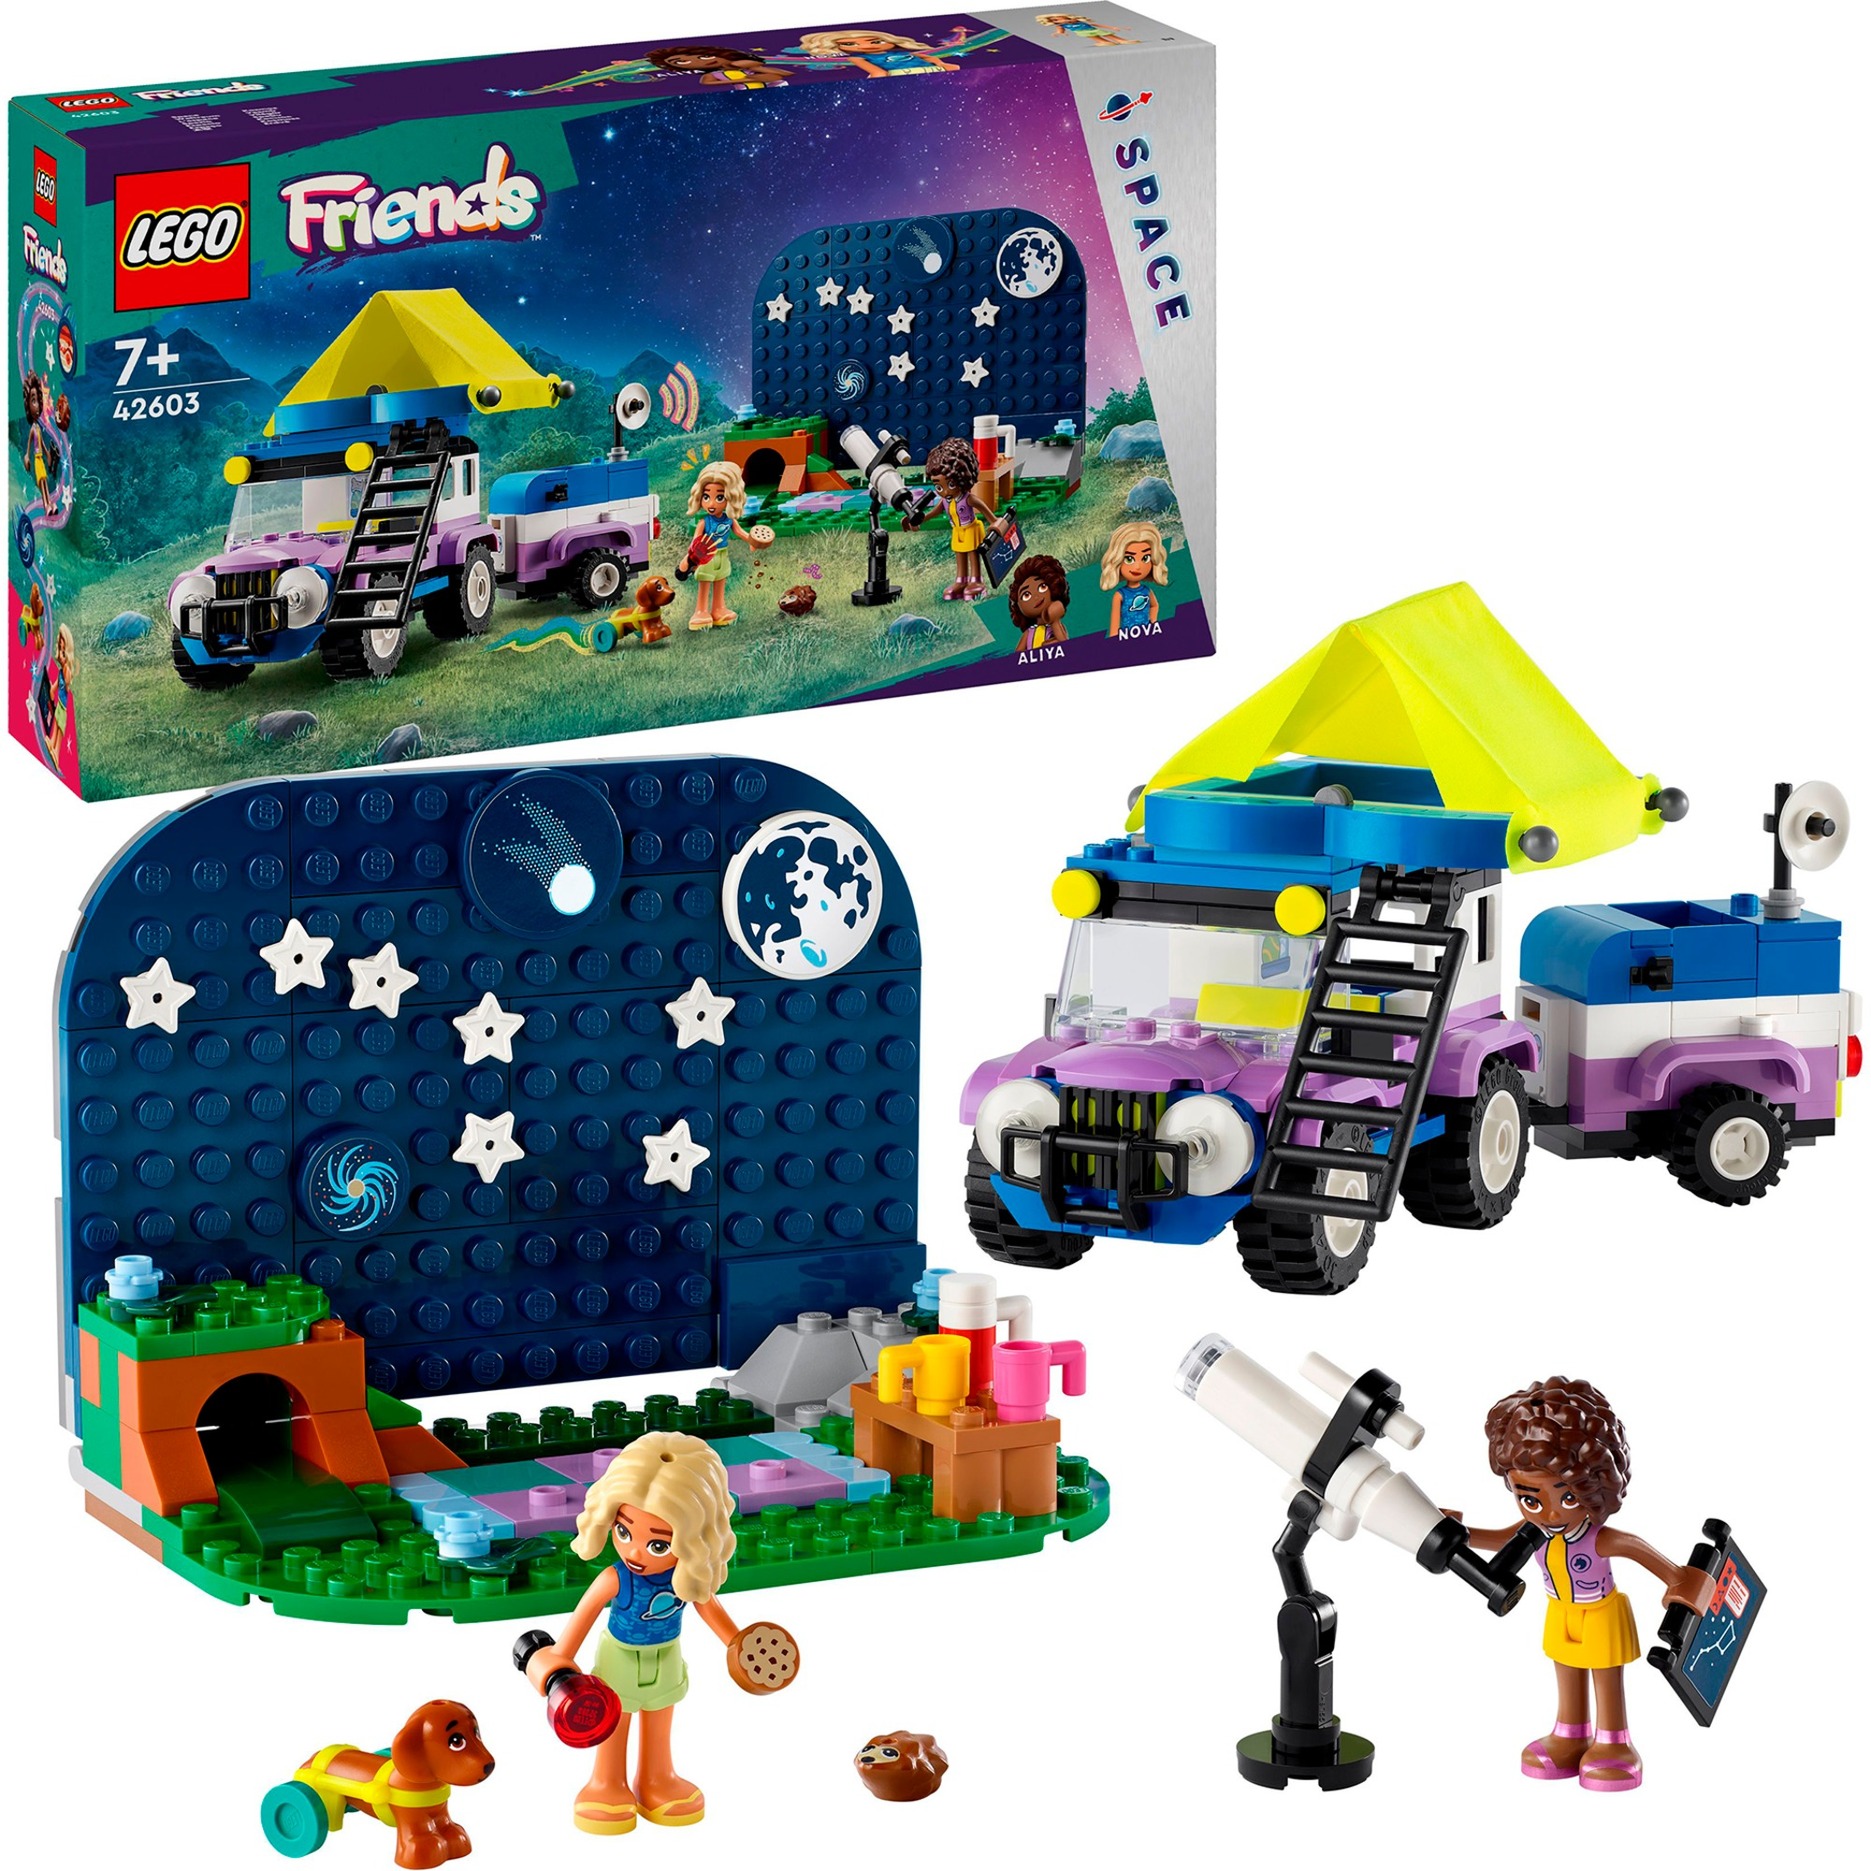 42603 Friends Sternengucker-Campingfahrzeug, Konstruktionsspielzeug von Lego